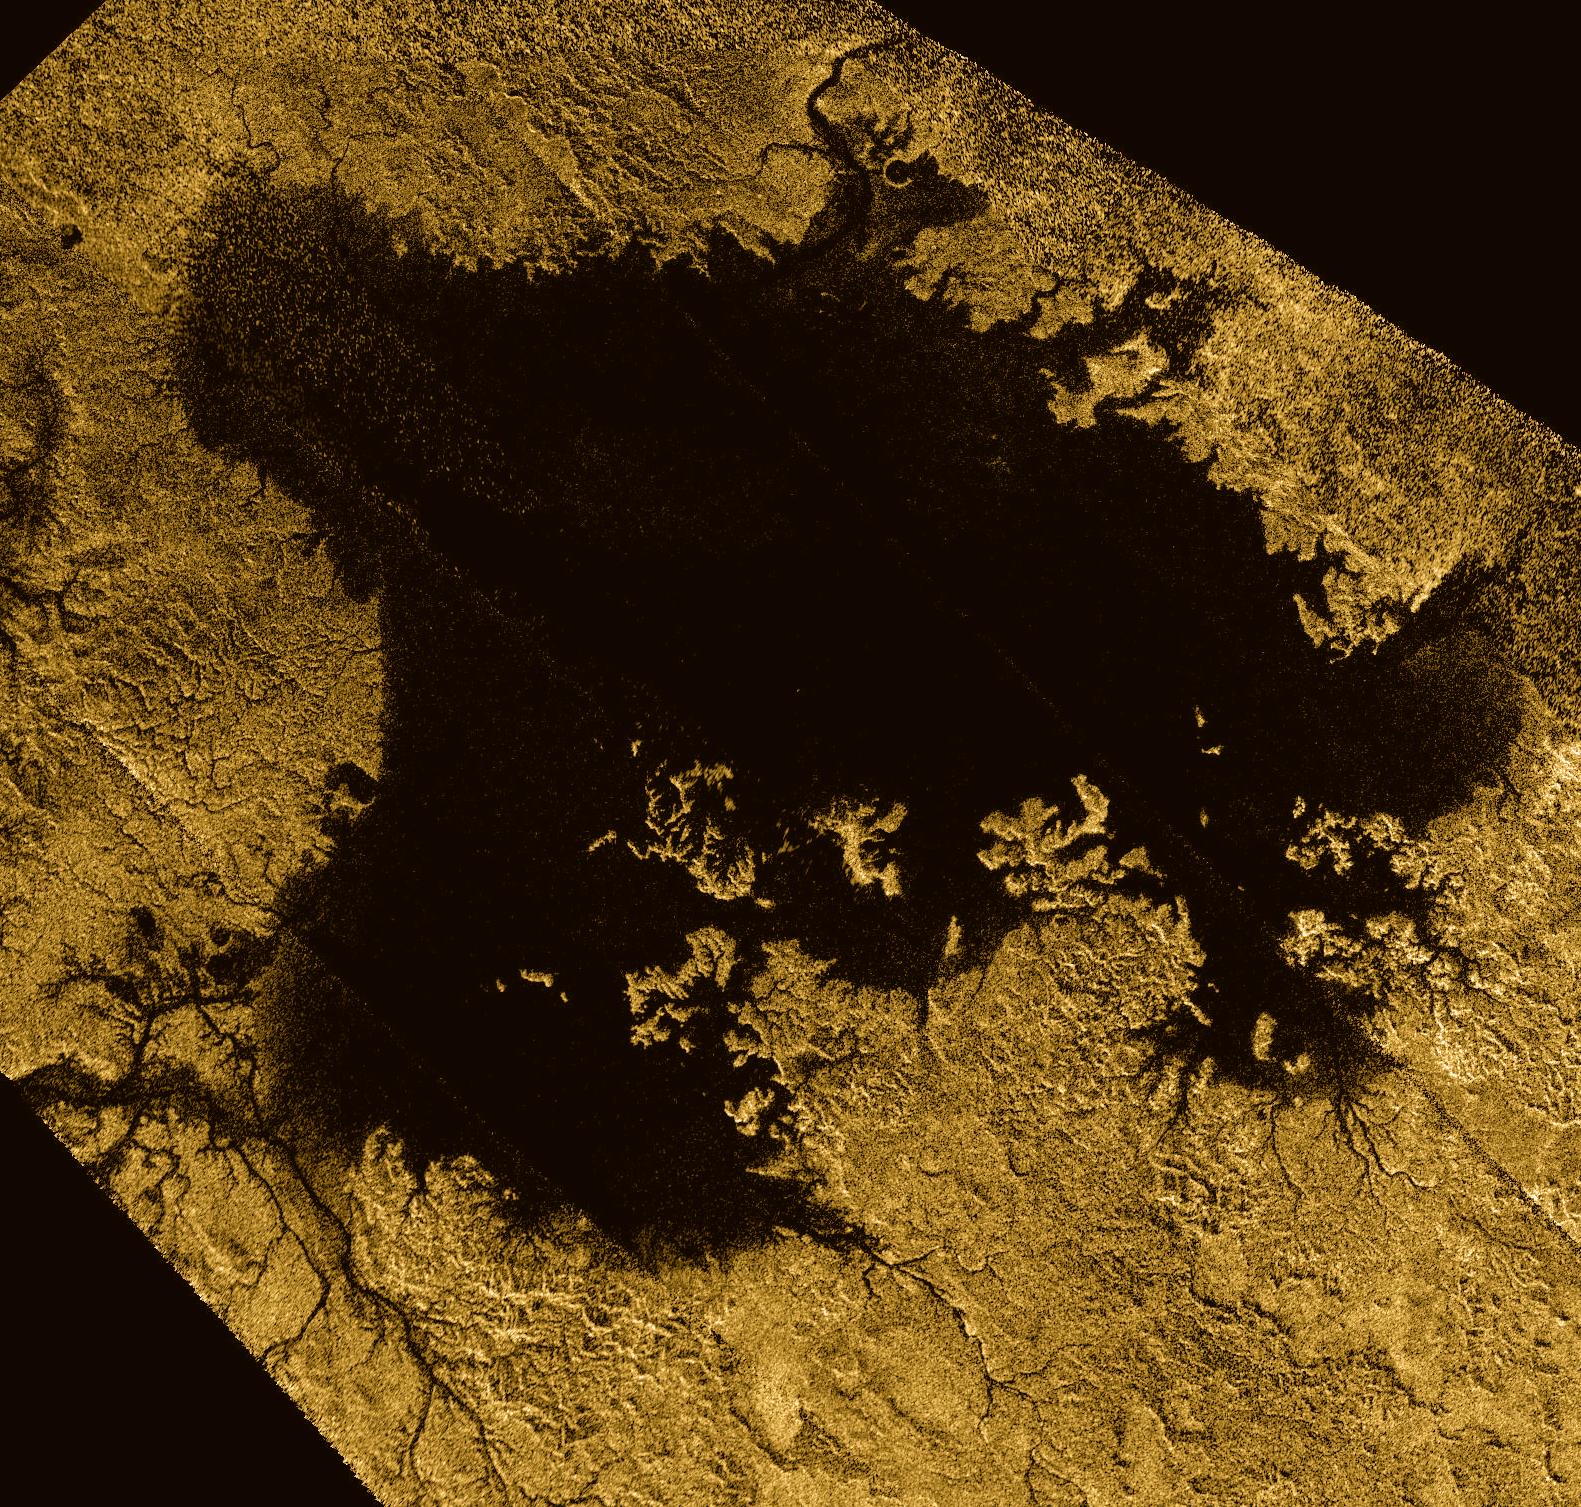 Ligeia&nbsp;Mare, montré ici dans une image en fausses couleurs obtenue en combinant des observations du radar de Cassini, est le deuxième grand lac sur Titan. Il mesure environ 420 km sur 350 km. Il est rempli d'hydrocarbures légers liquides, tels que l'éthane et le méthane. On trouvait déjà des traces de ces hydrocarbures, ainsi que leurs alcènes et alcynes dans l’atmosphère de Titan. Jusqu’à récemment, le propène n’avait pas été détecté dans cette atmosphère alors que c’était le cas du propane et du propyne. © Nasa, JPL-Caltech, ASI, Cornell